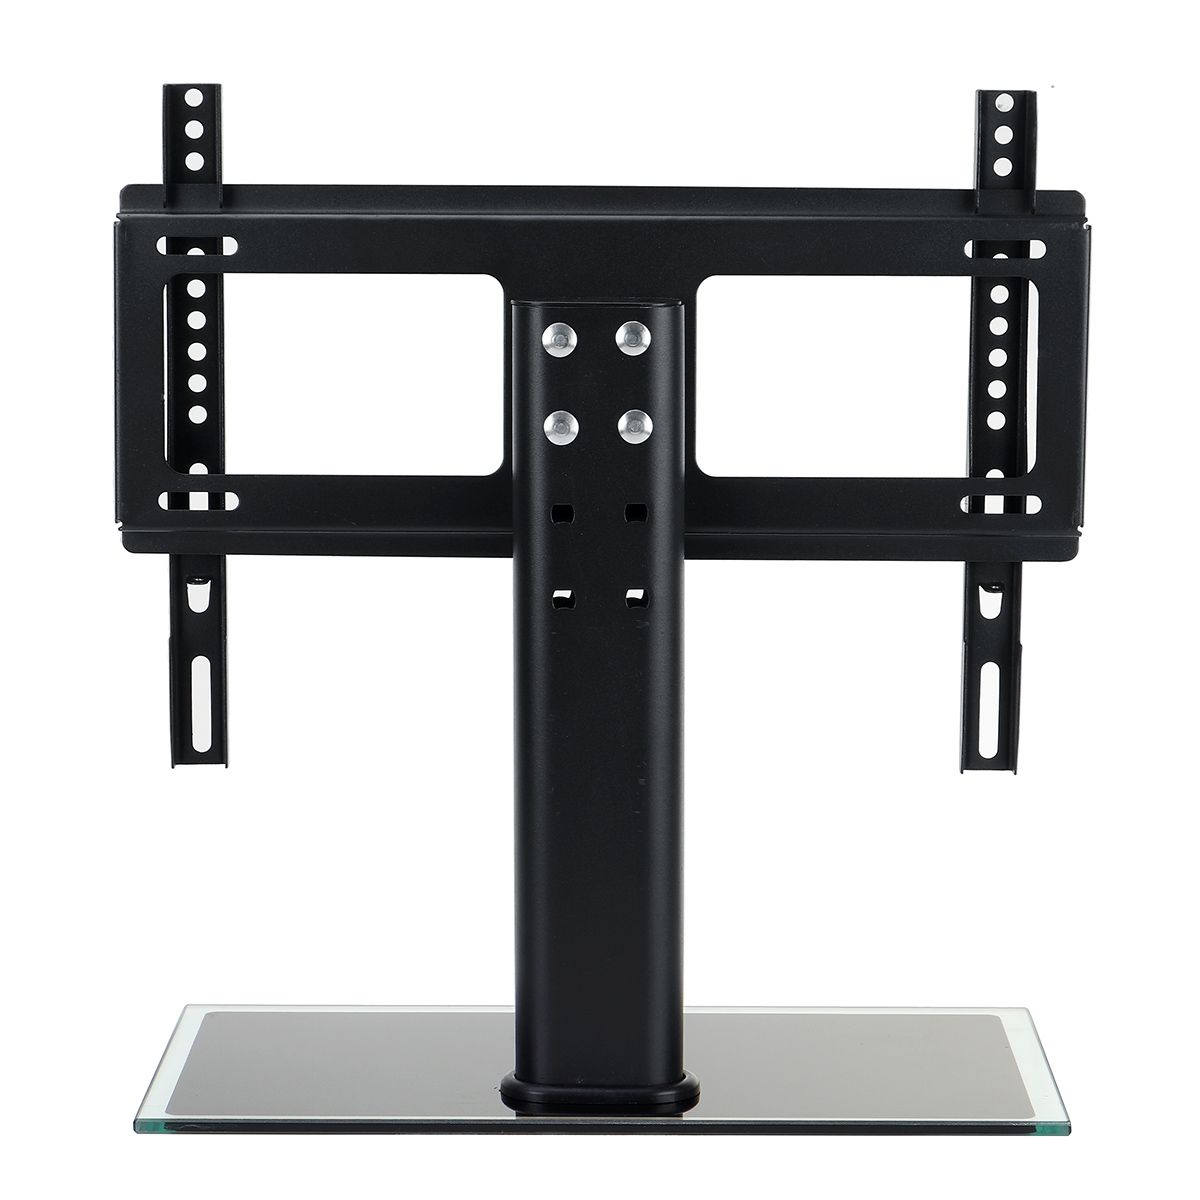 Universal-TV-Bracket-Stand-Base-Adjustable-Height-Television-Holder-Bracket-Load-40-60KG-for-26-32-i-1749862